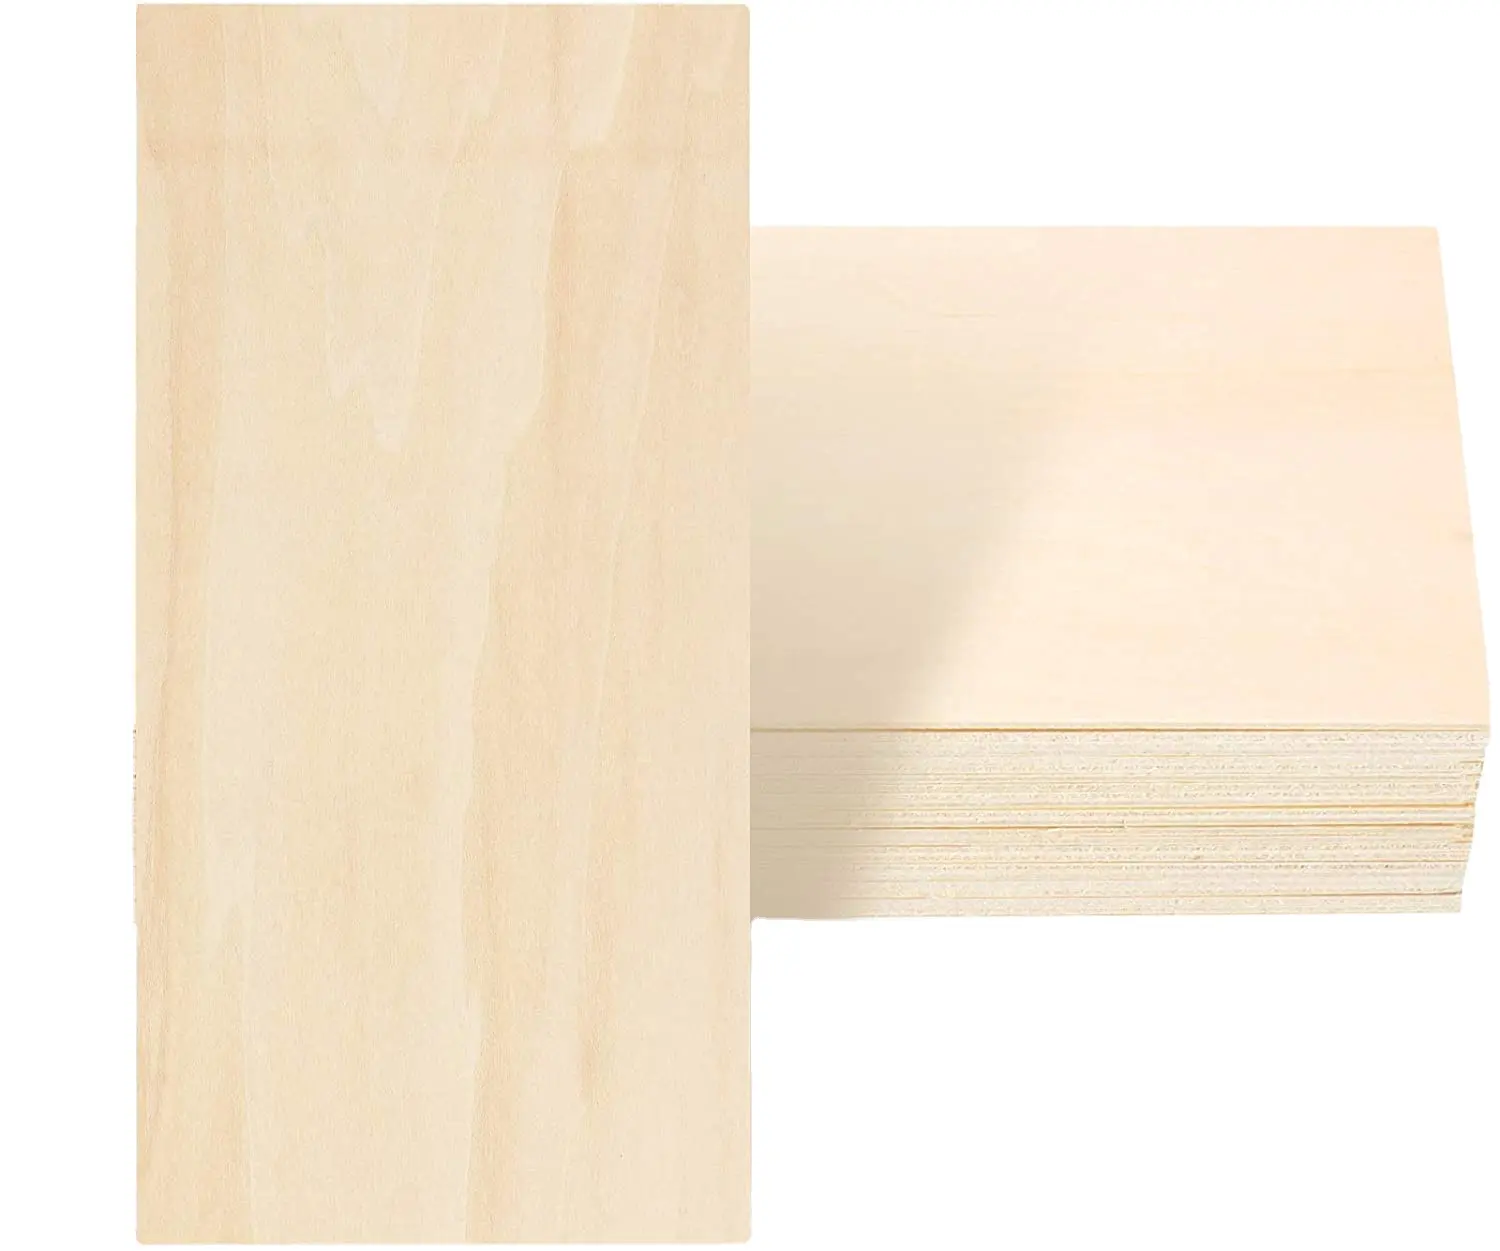 SLT nouveau bouleau baltique B/B Grade contreplaqué feuilles de tilleul panneau mince bricolage feuilles de bois pour artisanat de noël décoration en bois